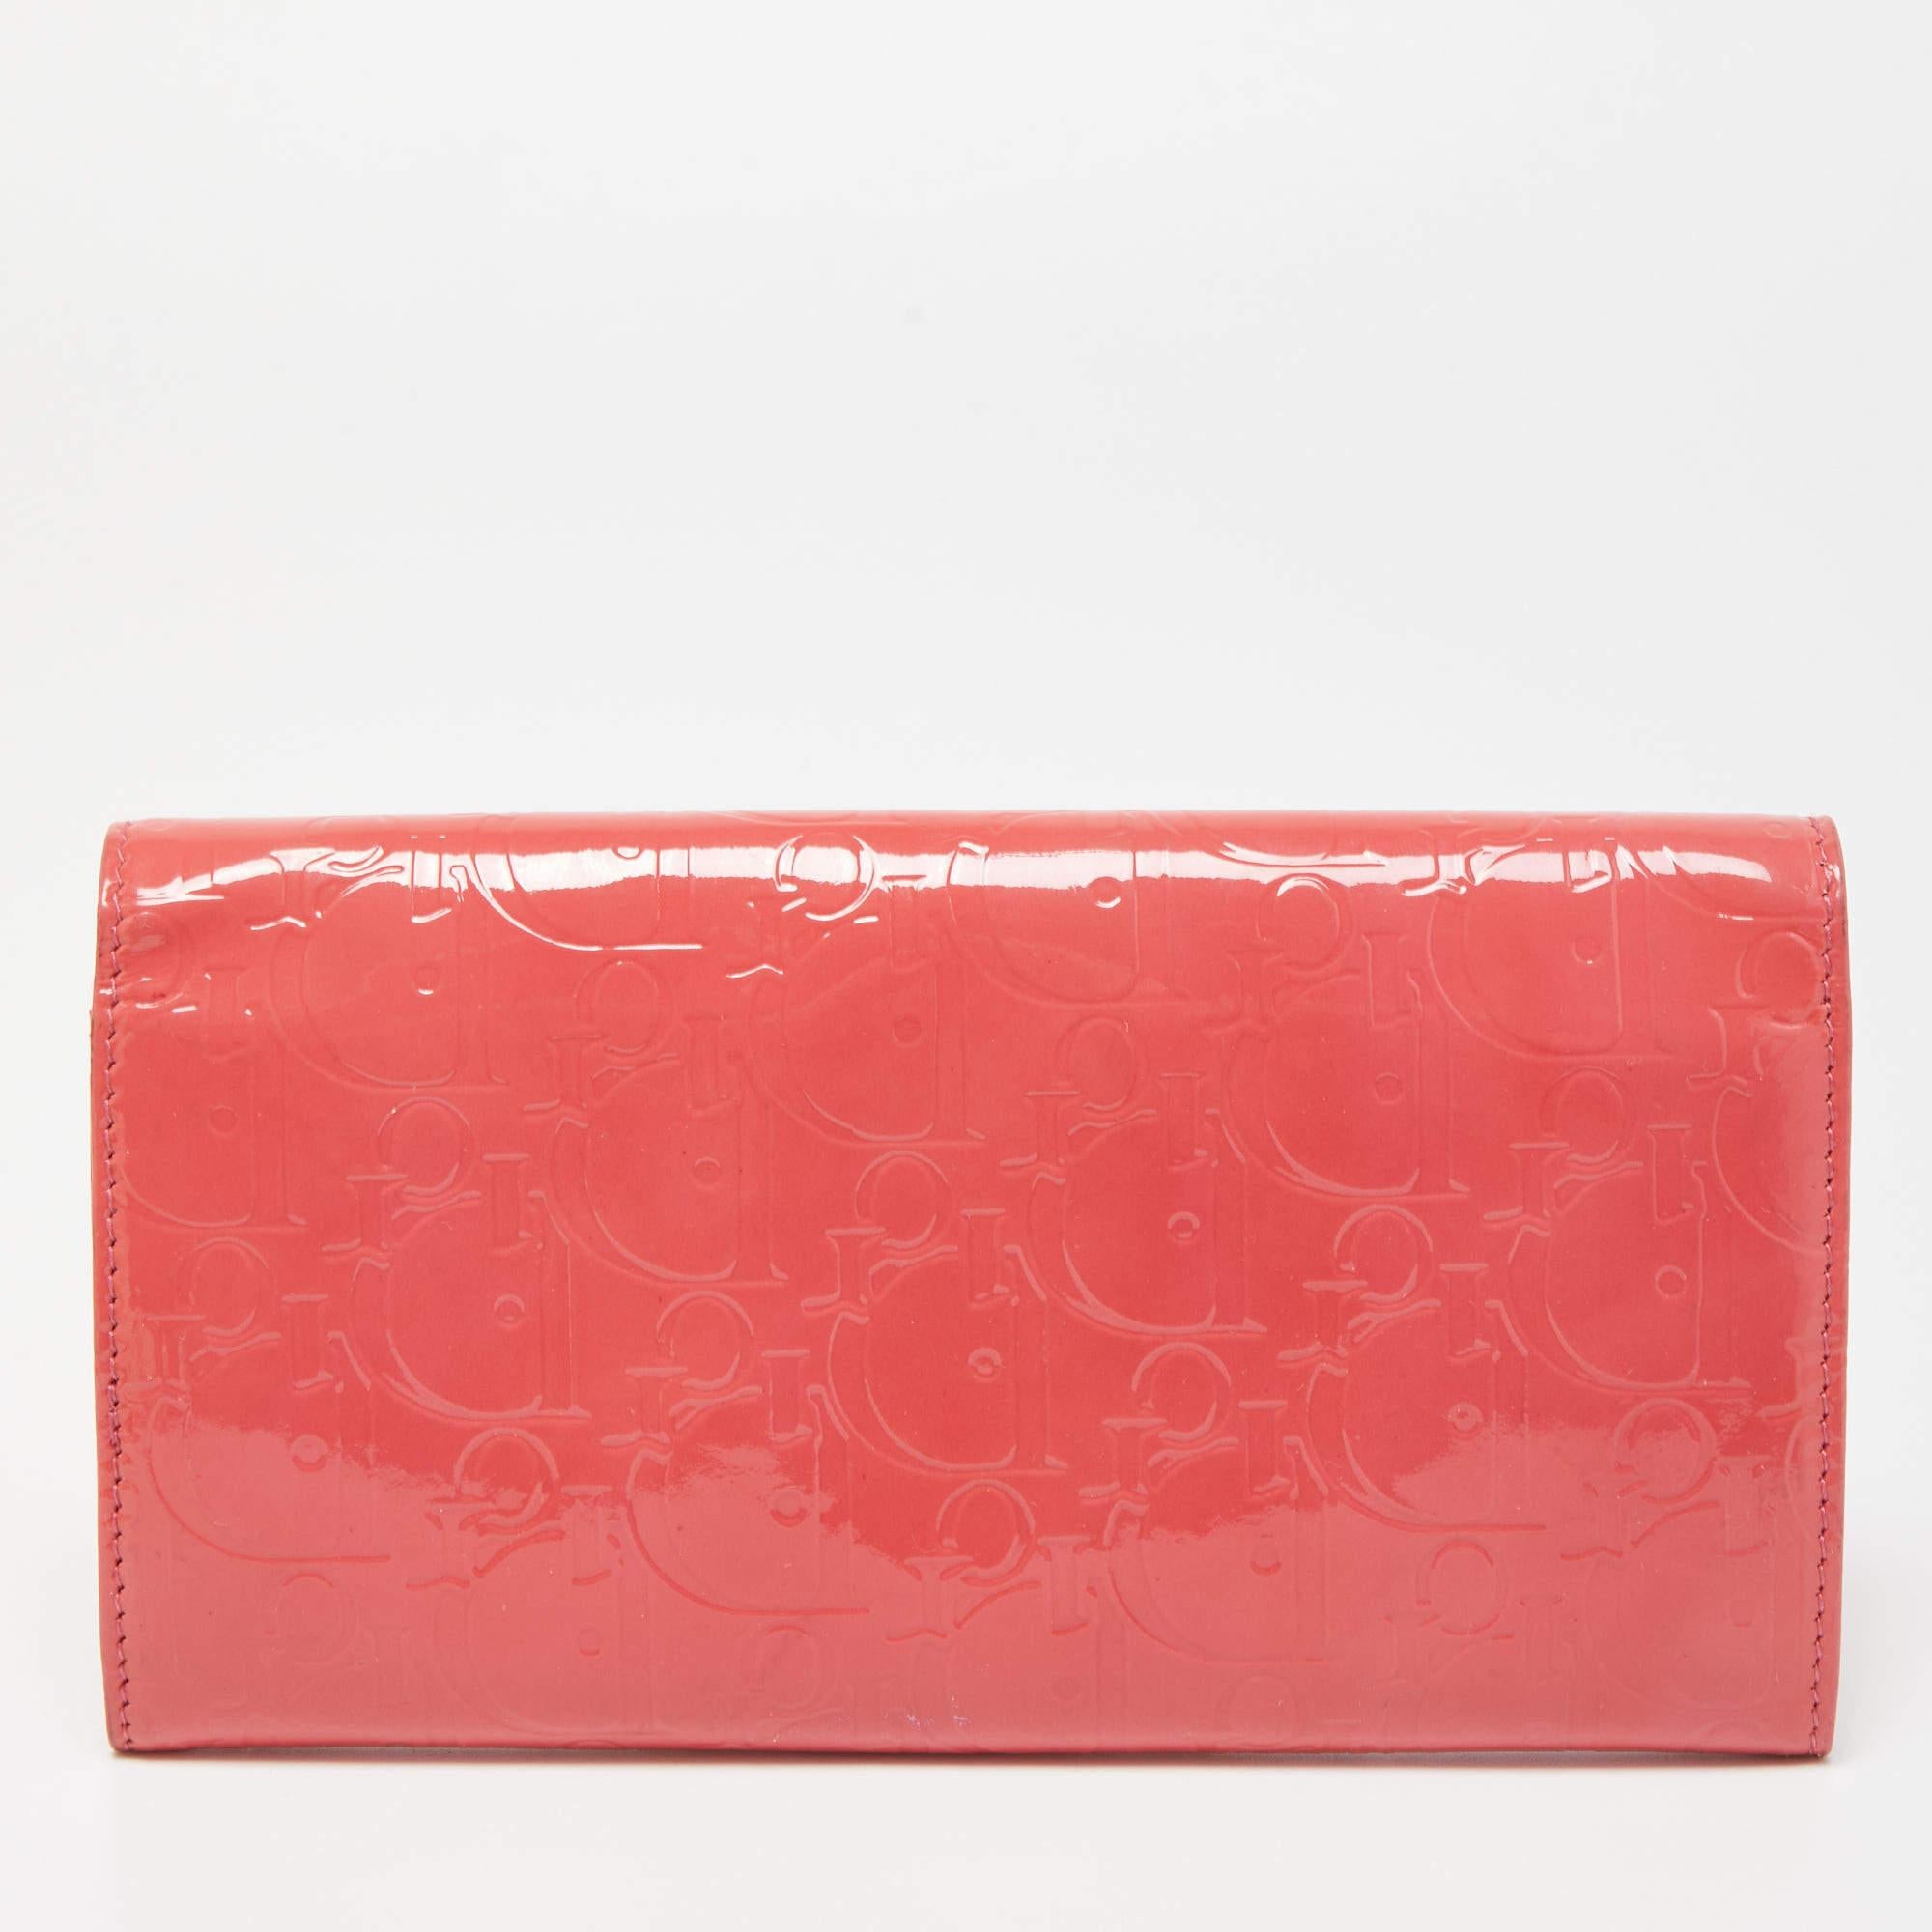 Ce portefeuille rose Dior est un accessoire luxueux qui s'avérera très fonctionnel. Il est fabriqué à l'aide de matériaux durables à l'extérieur et dévoile un intérieur bien organisé.

